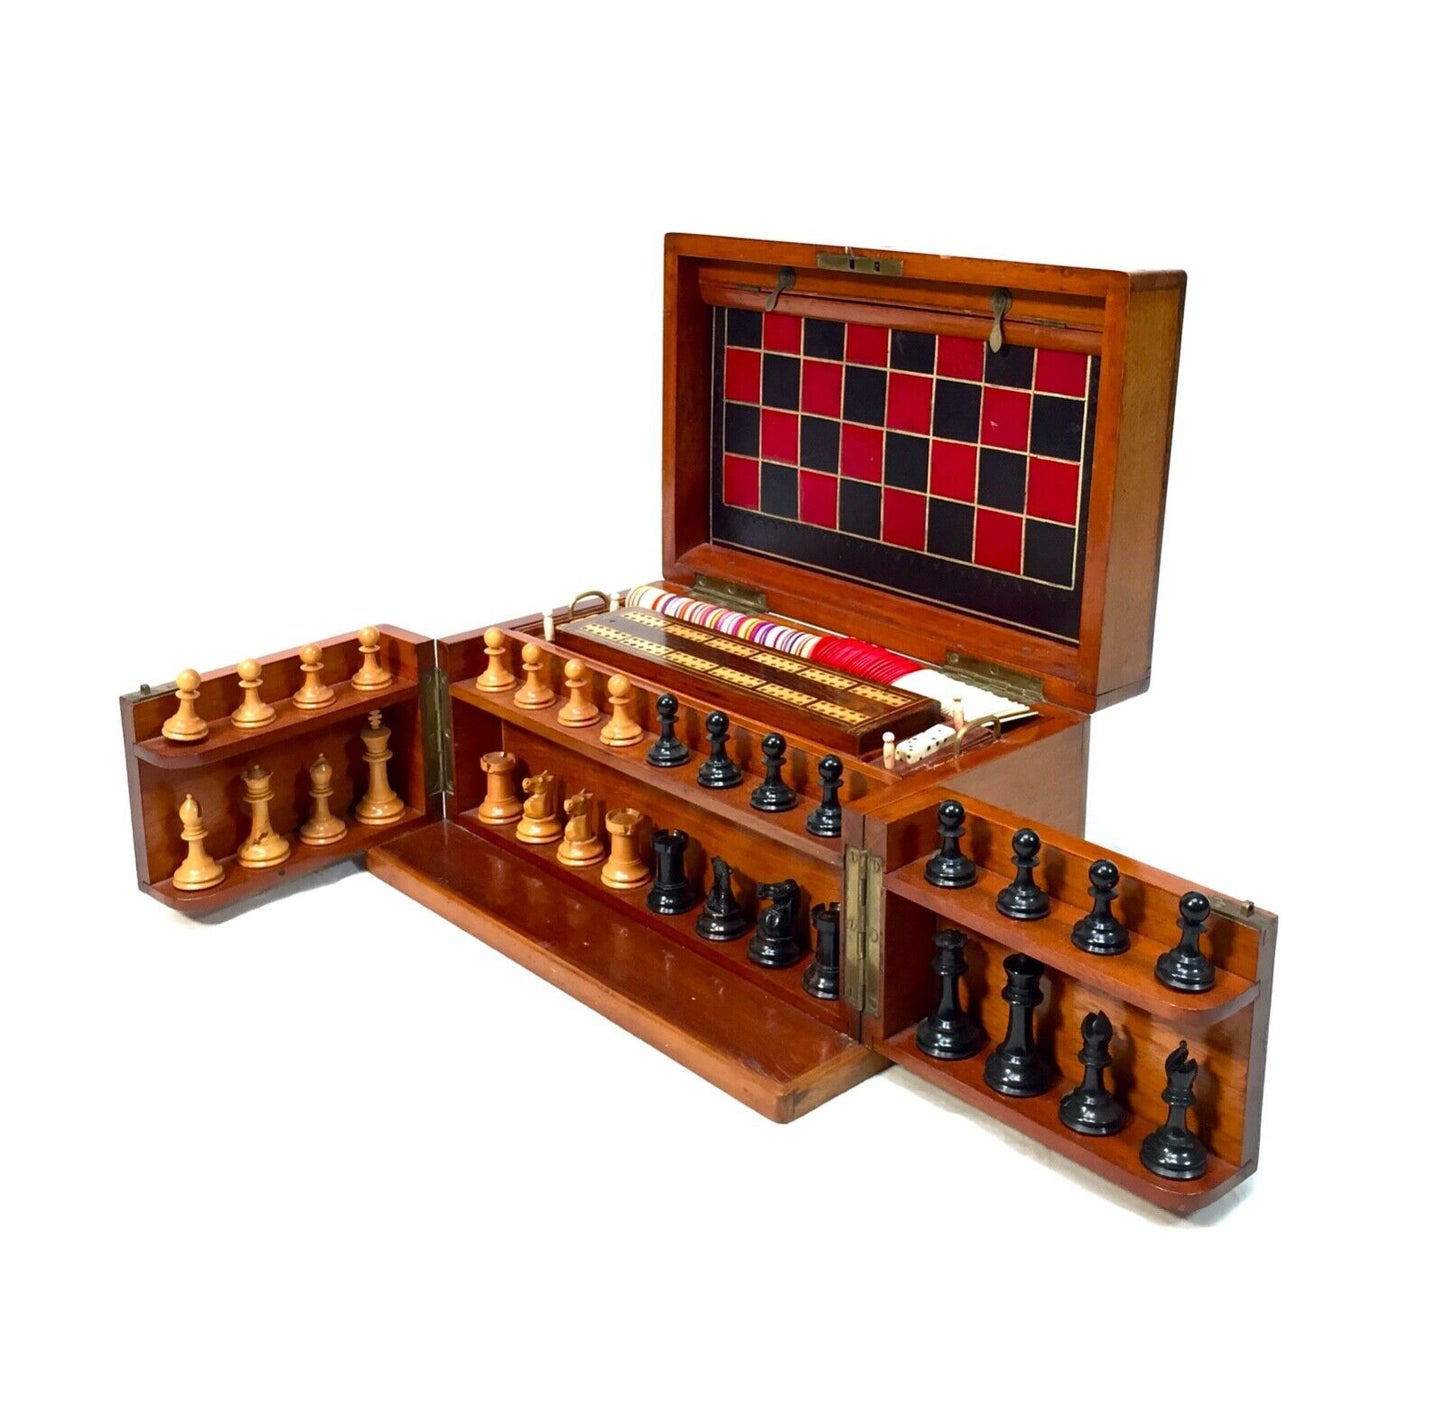 Antique 19th Century Victorian Games Compendium Box / Wooden Cabinet c.1880